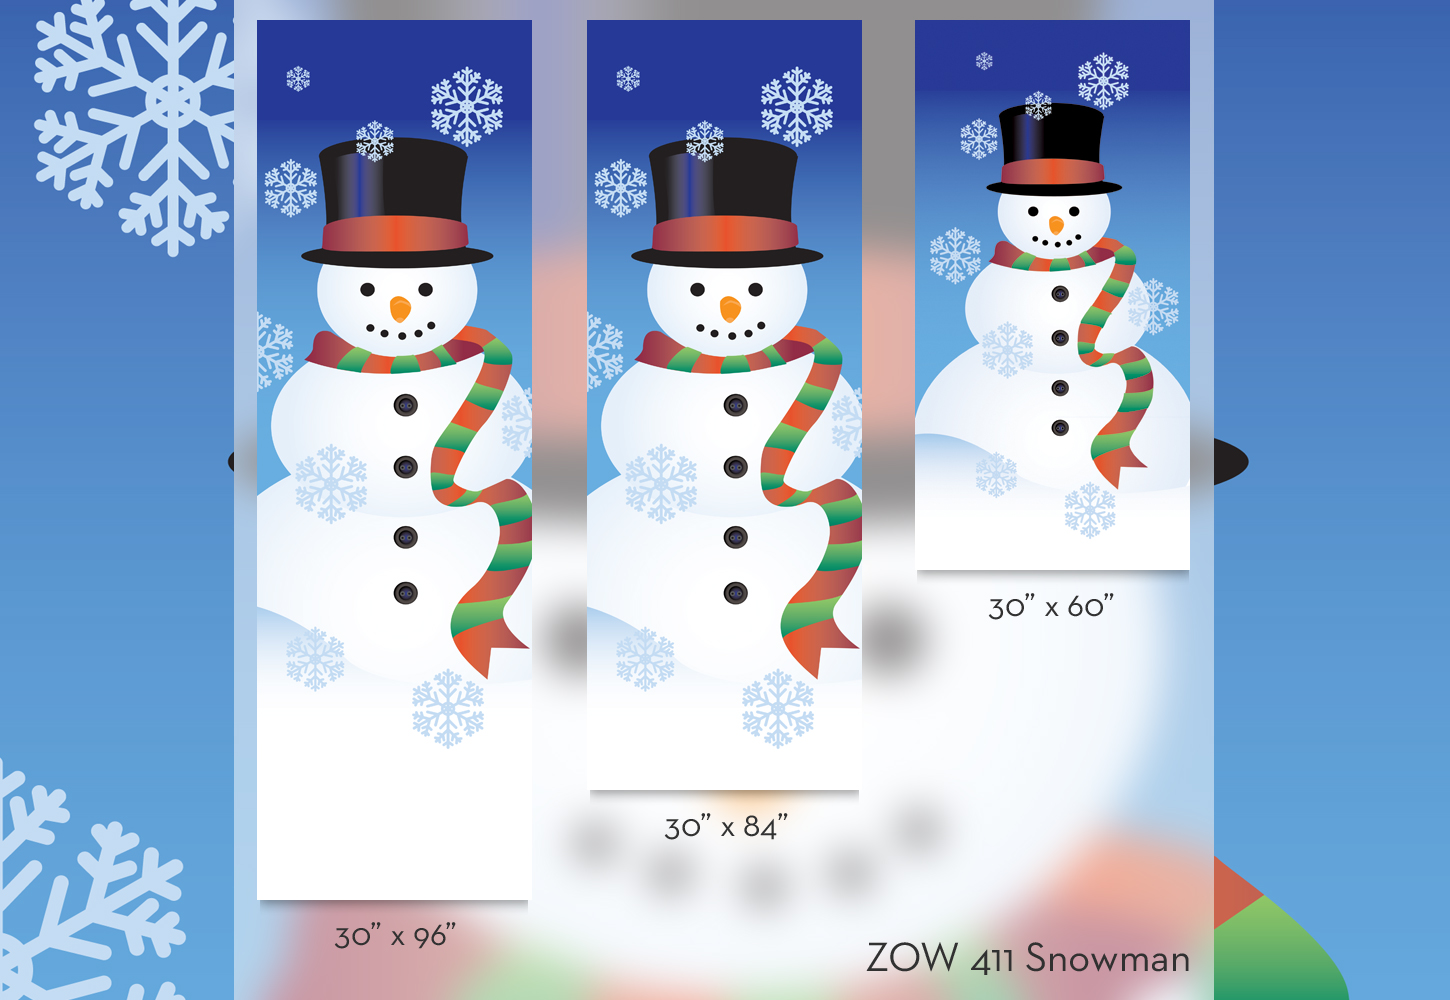 ZOW 411 Snowman